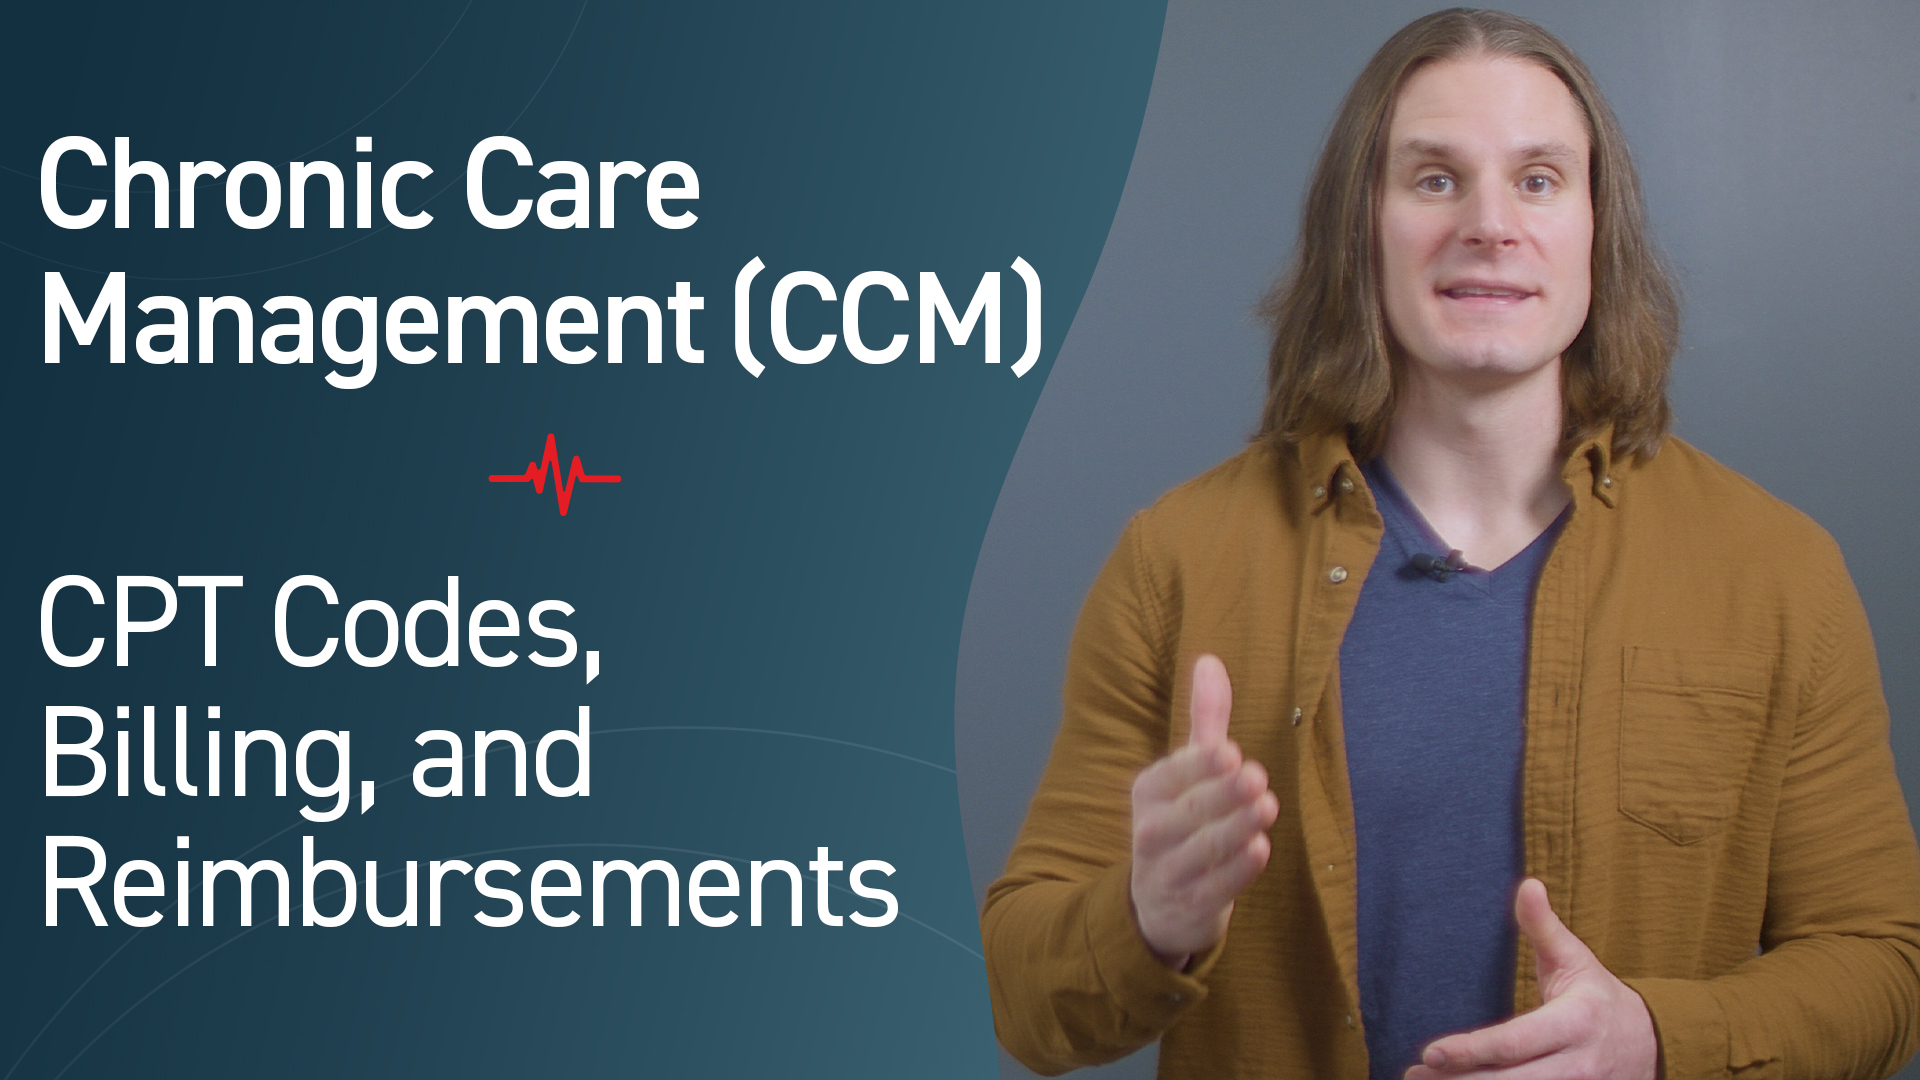 Chronic Care Management (CCM): CPT Codes, Billing, Reimbursements